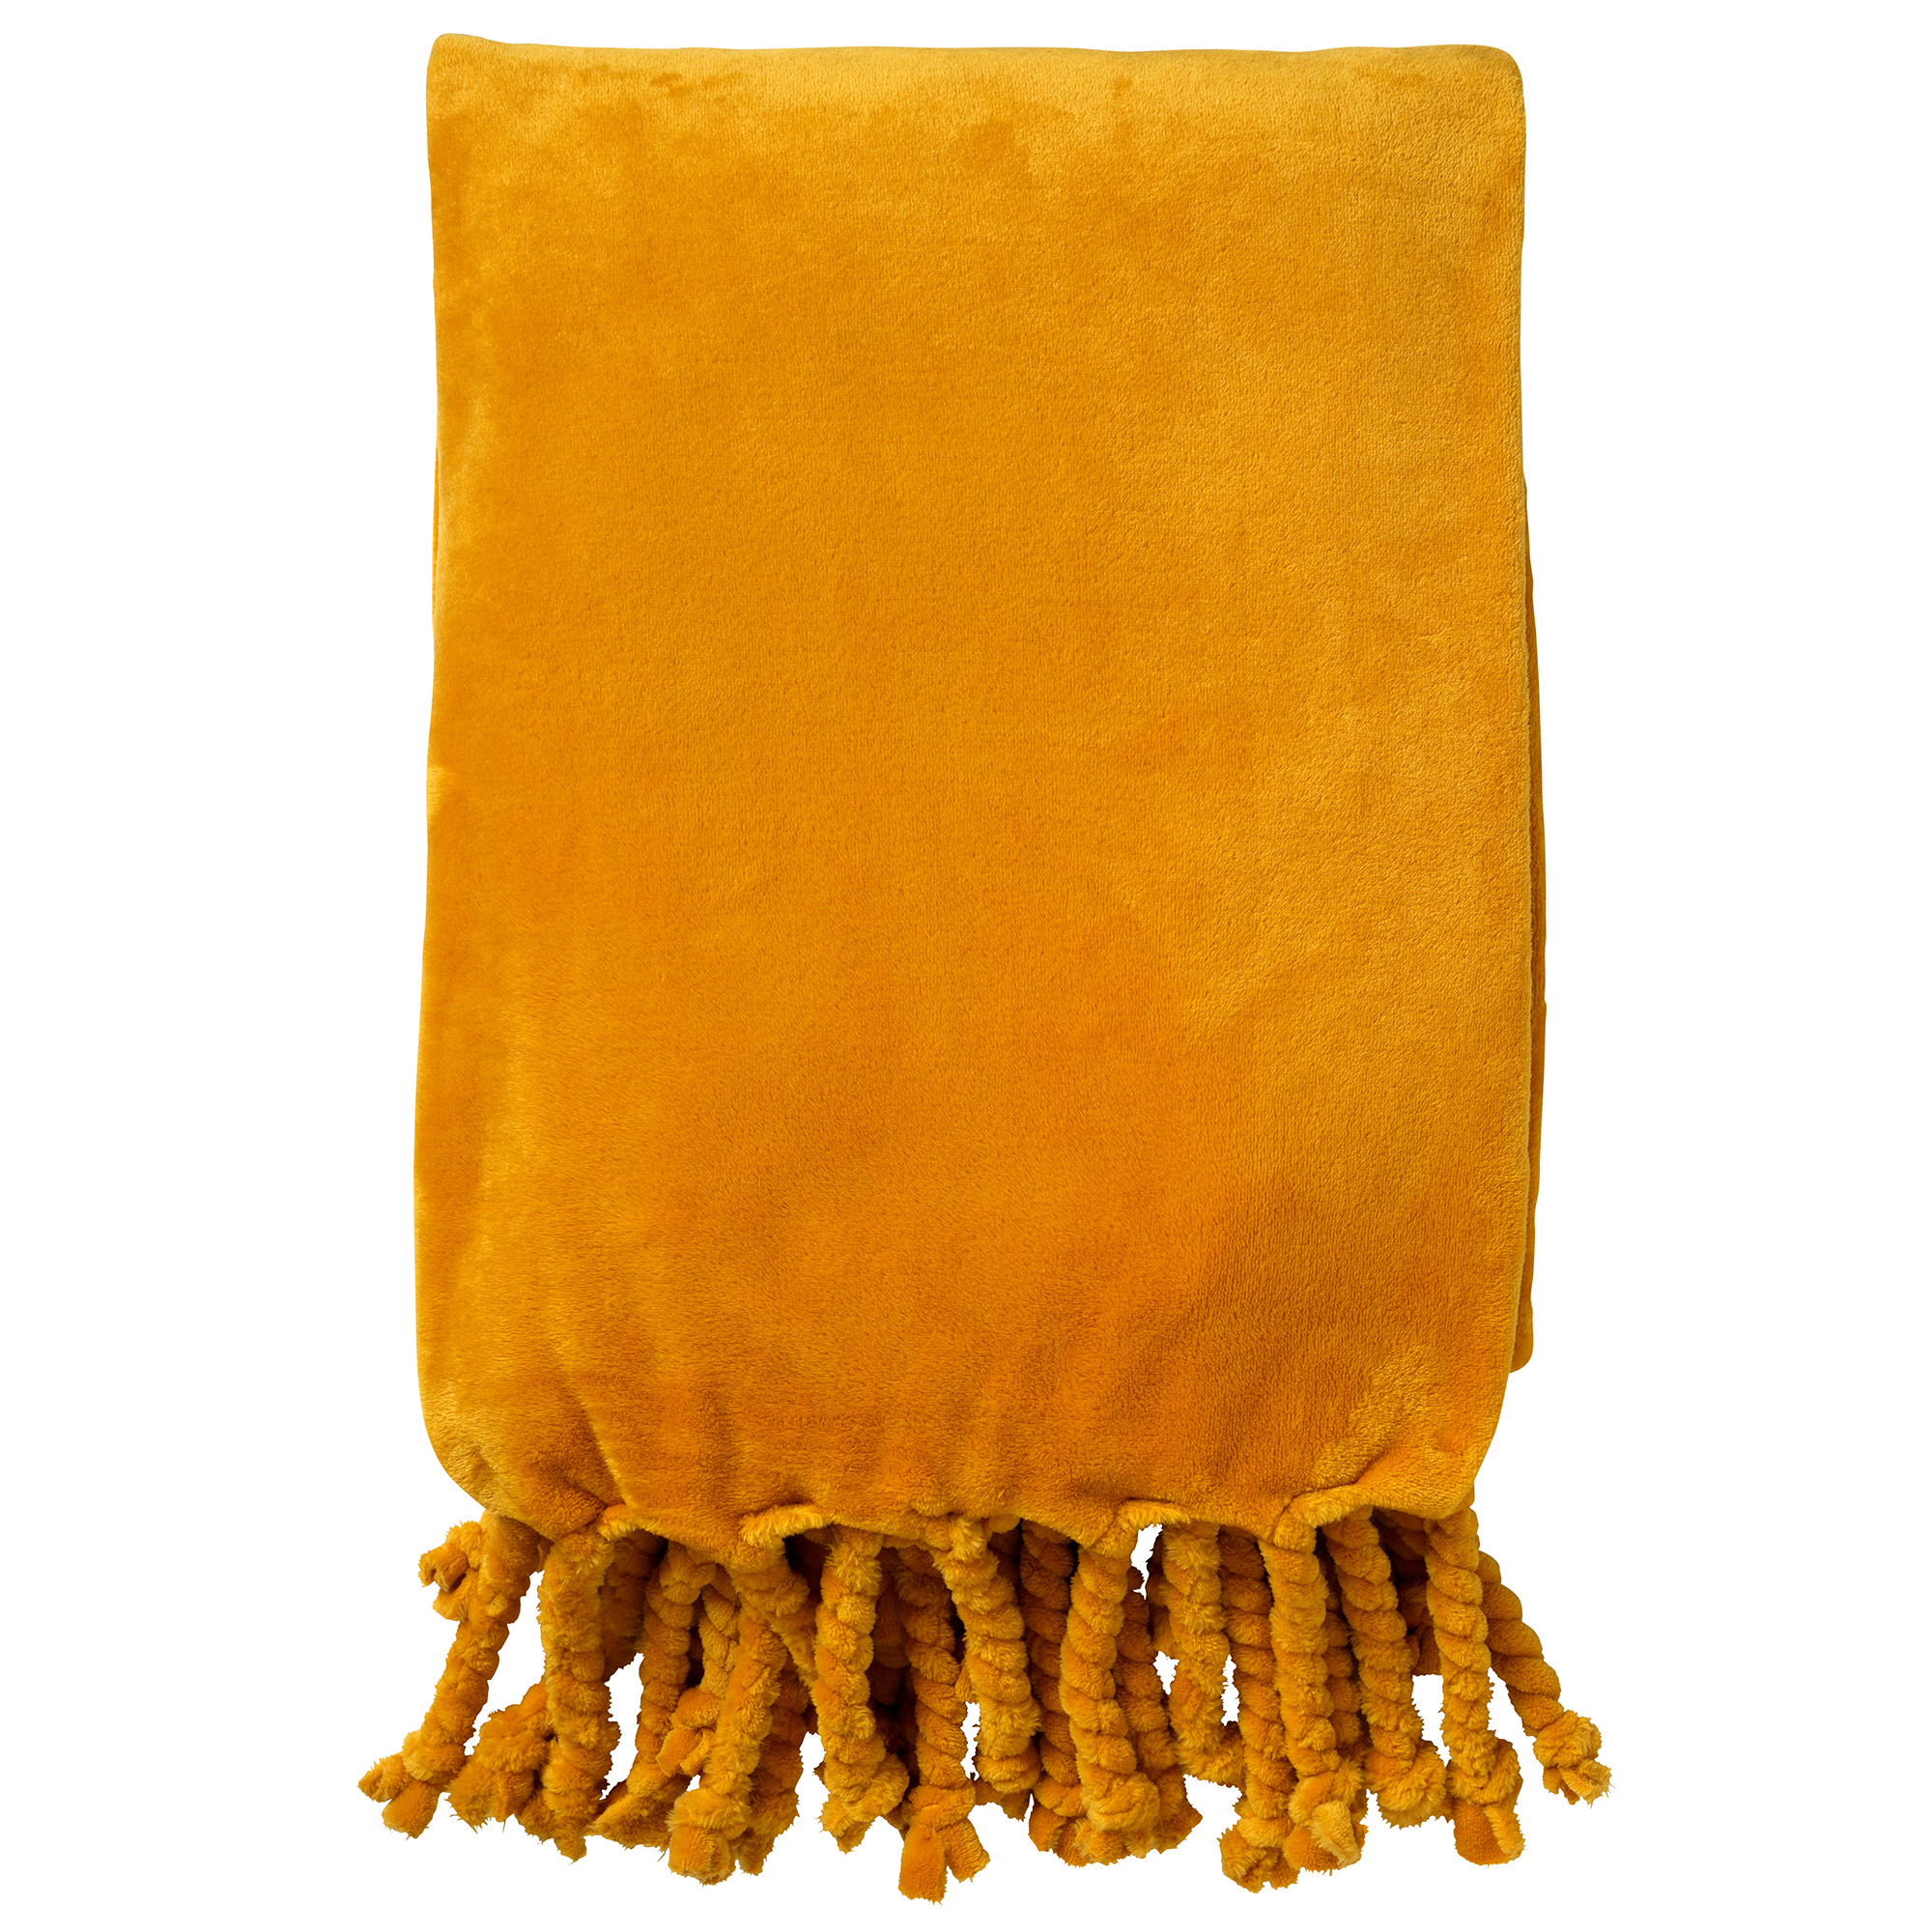 FLORIJN - Plaid van fleece 150x200 cm - Golden glow - geel - superzacht - met franjes